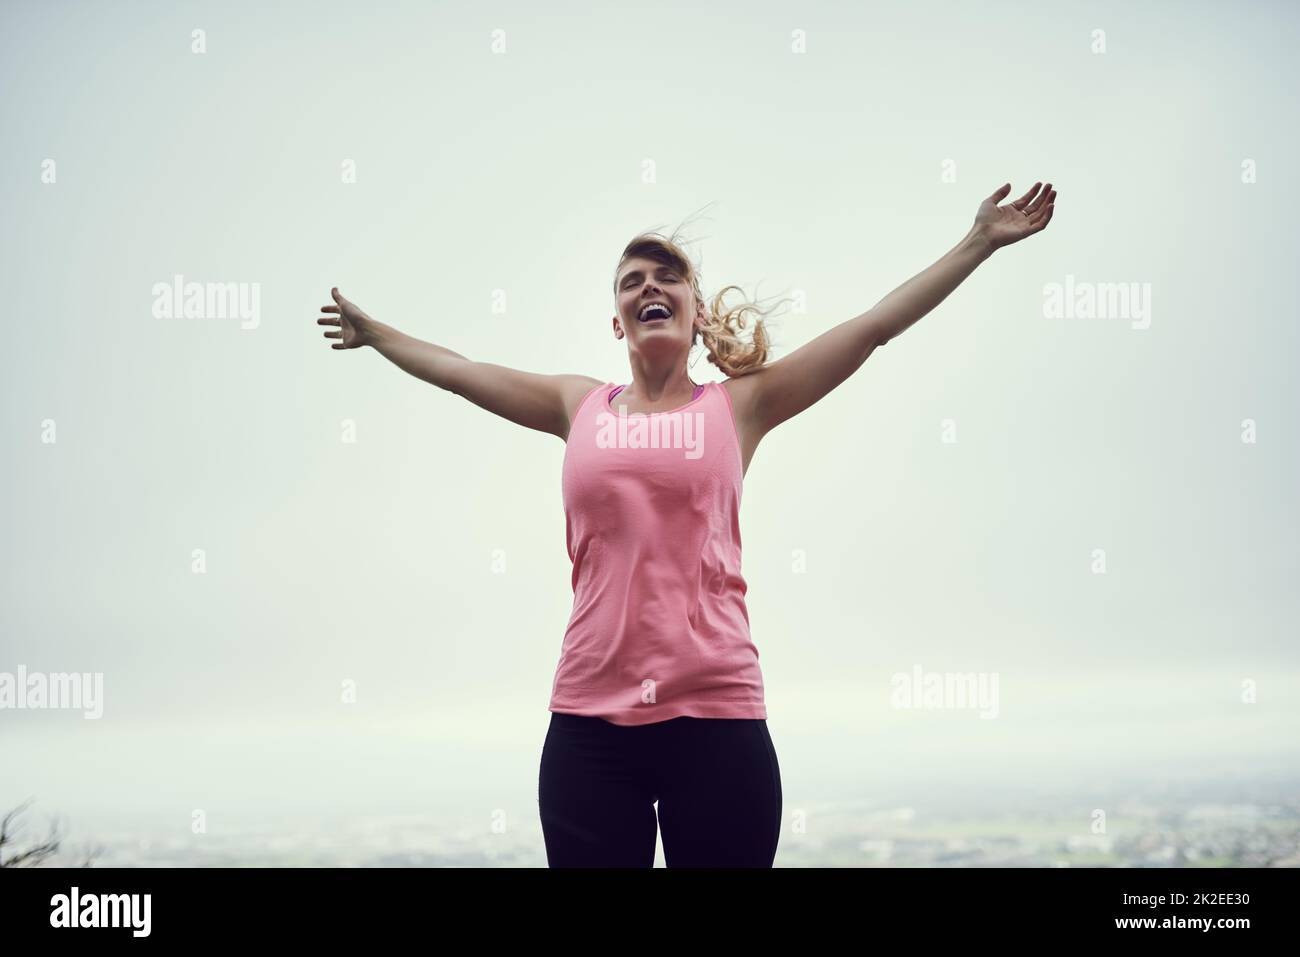 Sich fit und frei fühlen. Aufnahme einer glücklichen jungen Frau, die sich während eines Laufs in der Stadt frei fühlt. Stockfoto